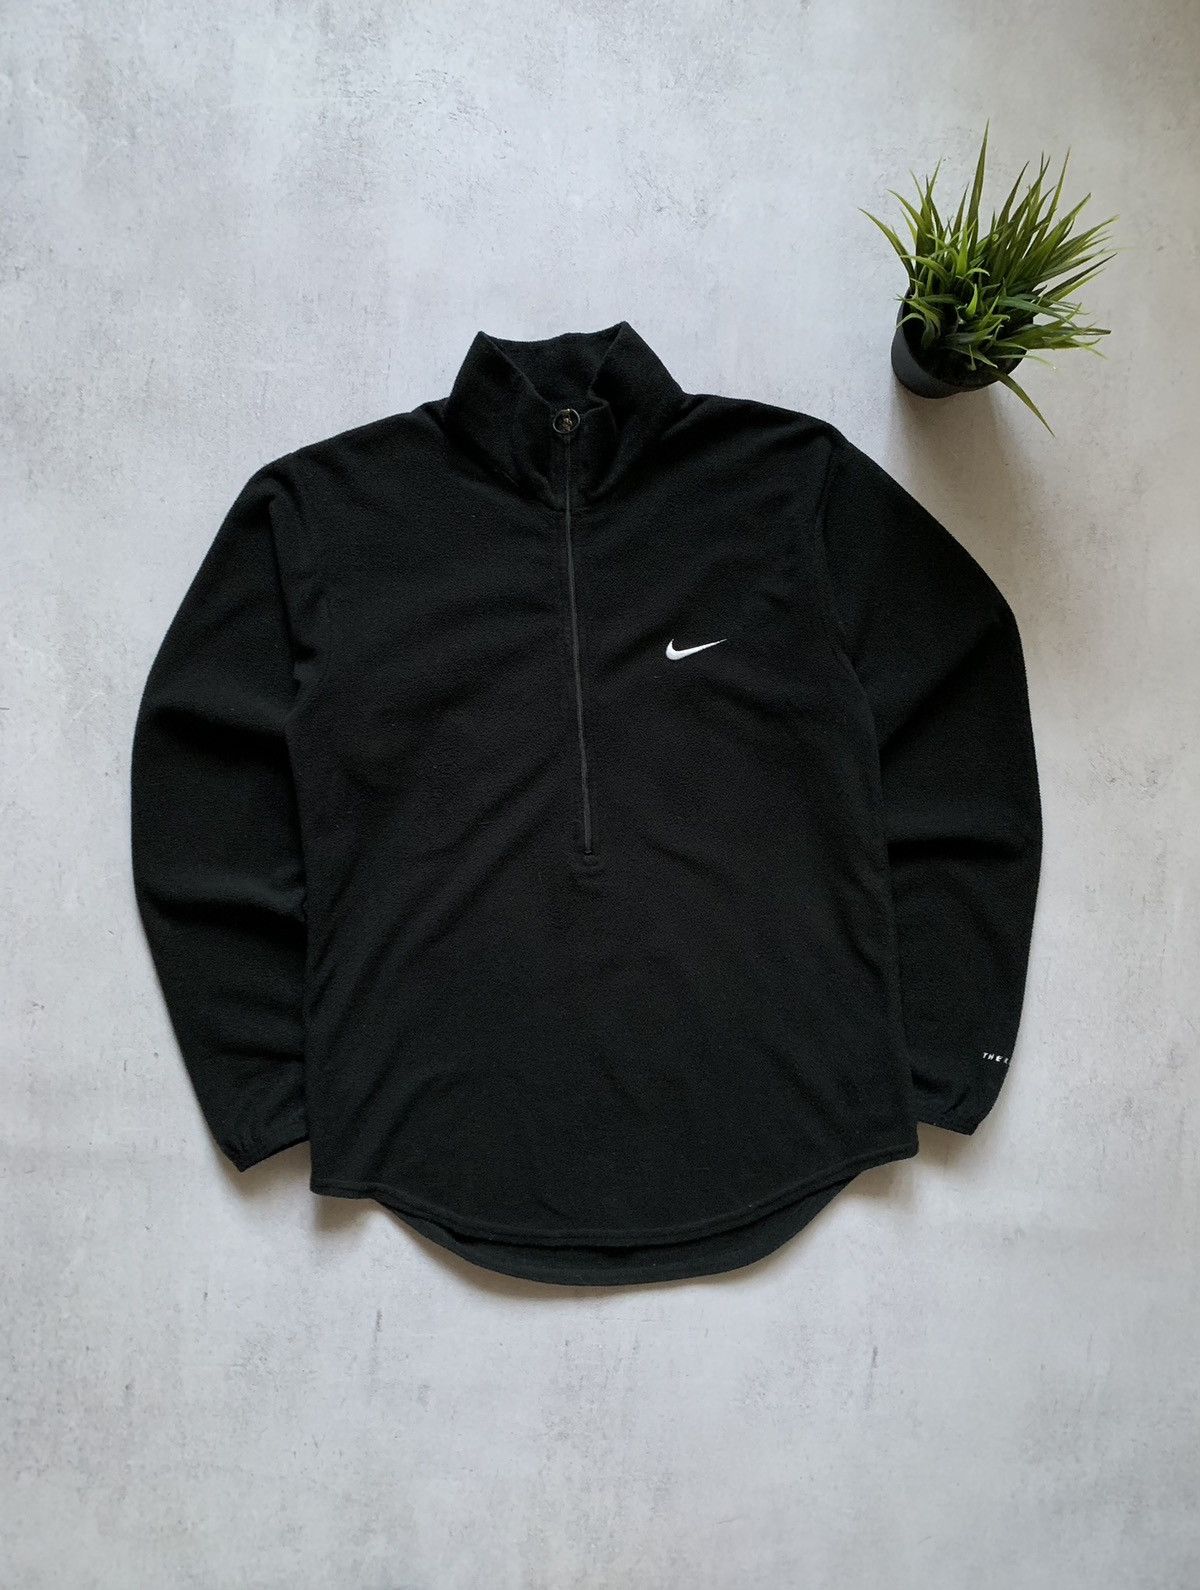 Pre-owned Nike X Vintage Nike Fleece Zip 1/2 Jacket Sweatshirt Therma Fit 90's In Black